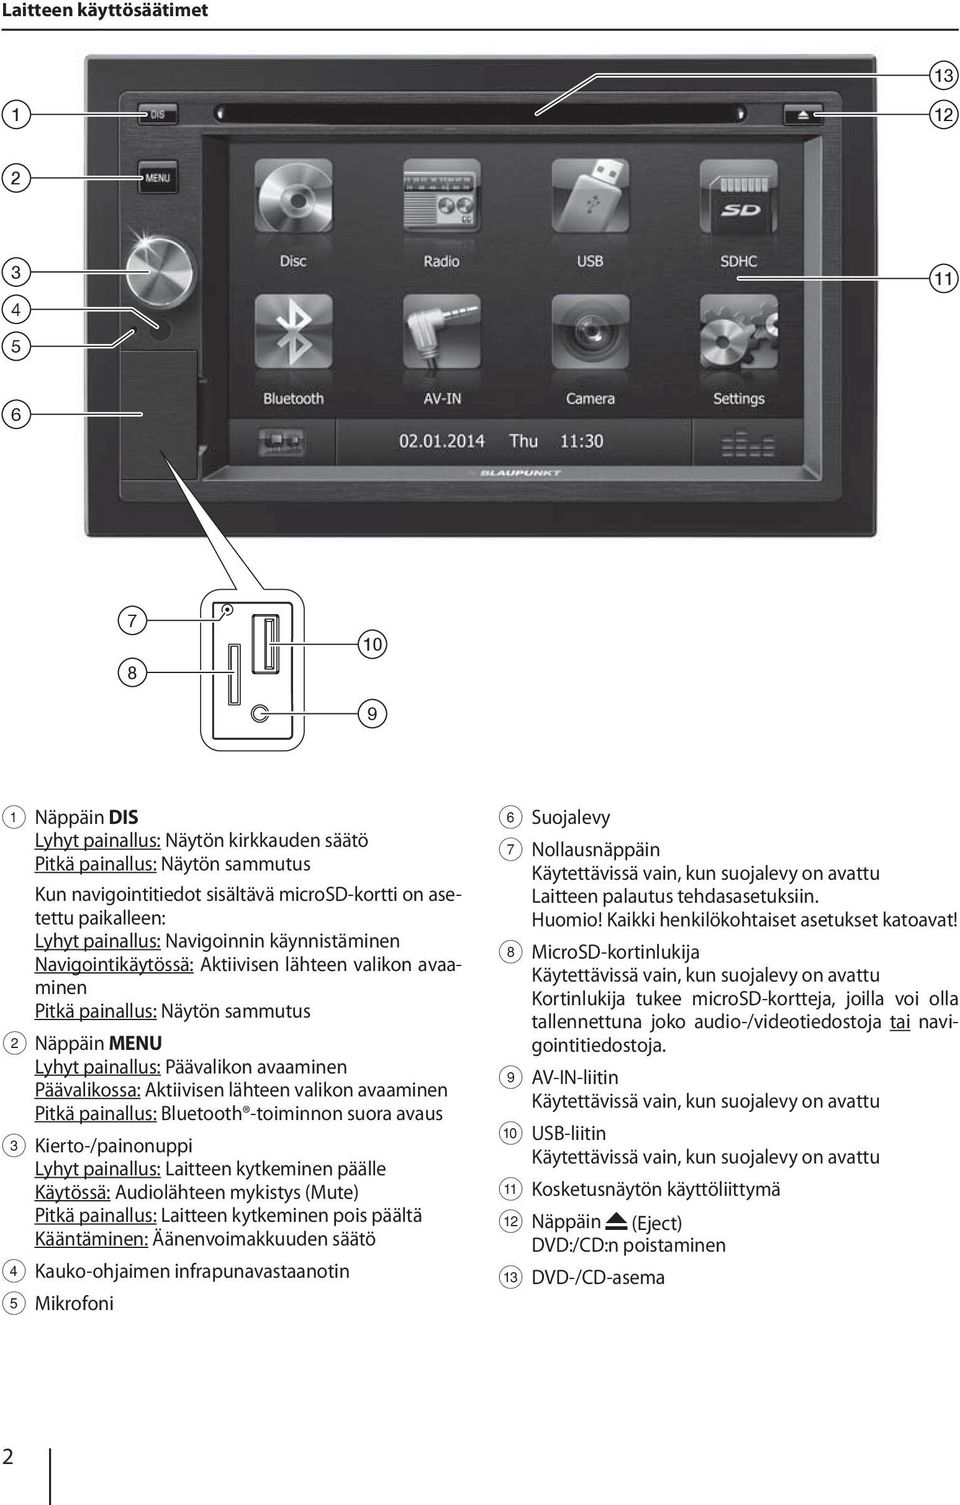 Päävalikossa: Aktiivisen lähteen valikon avaaminen Pitkä painallus: Bluetooth -toiminnon suora avaus 3 Kierto-/painonuppi Lyhyt painallus: Laitteen kytkeminen päälle Käytössä: Audiolähteen mykistys